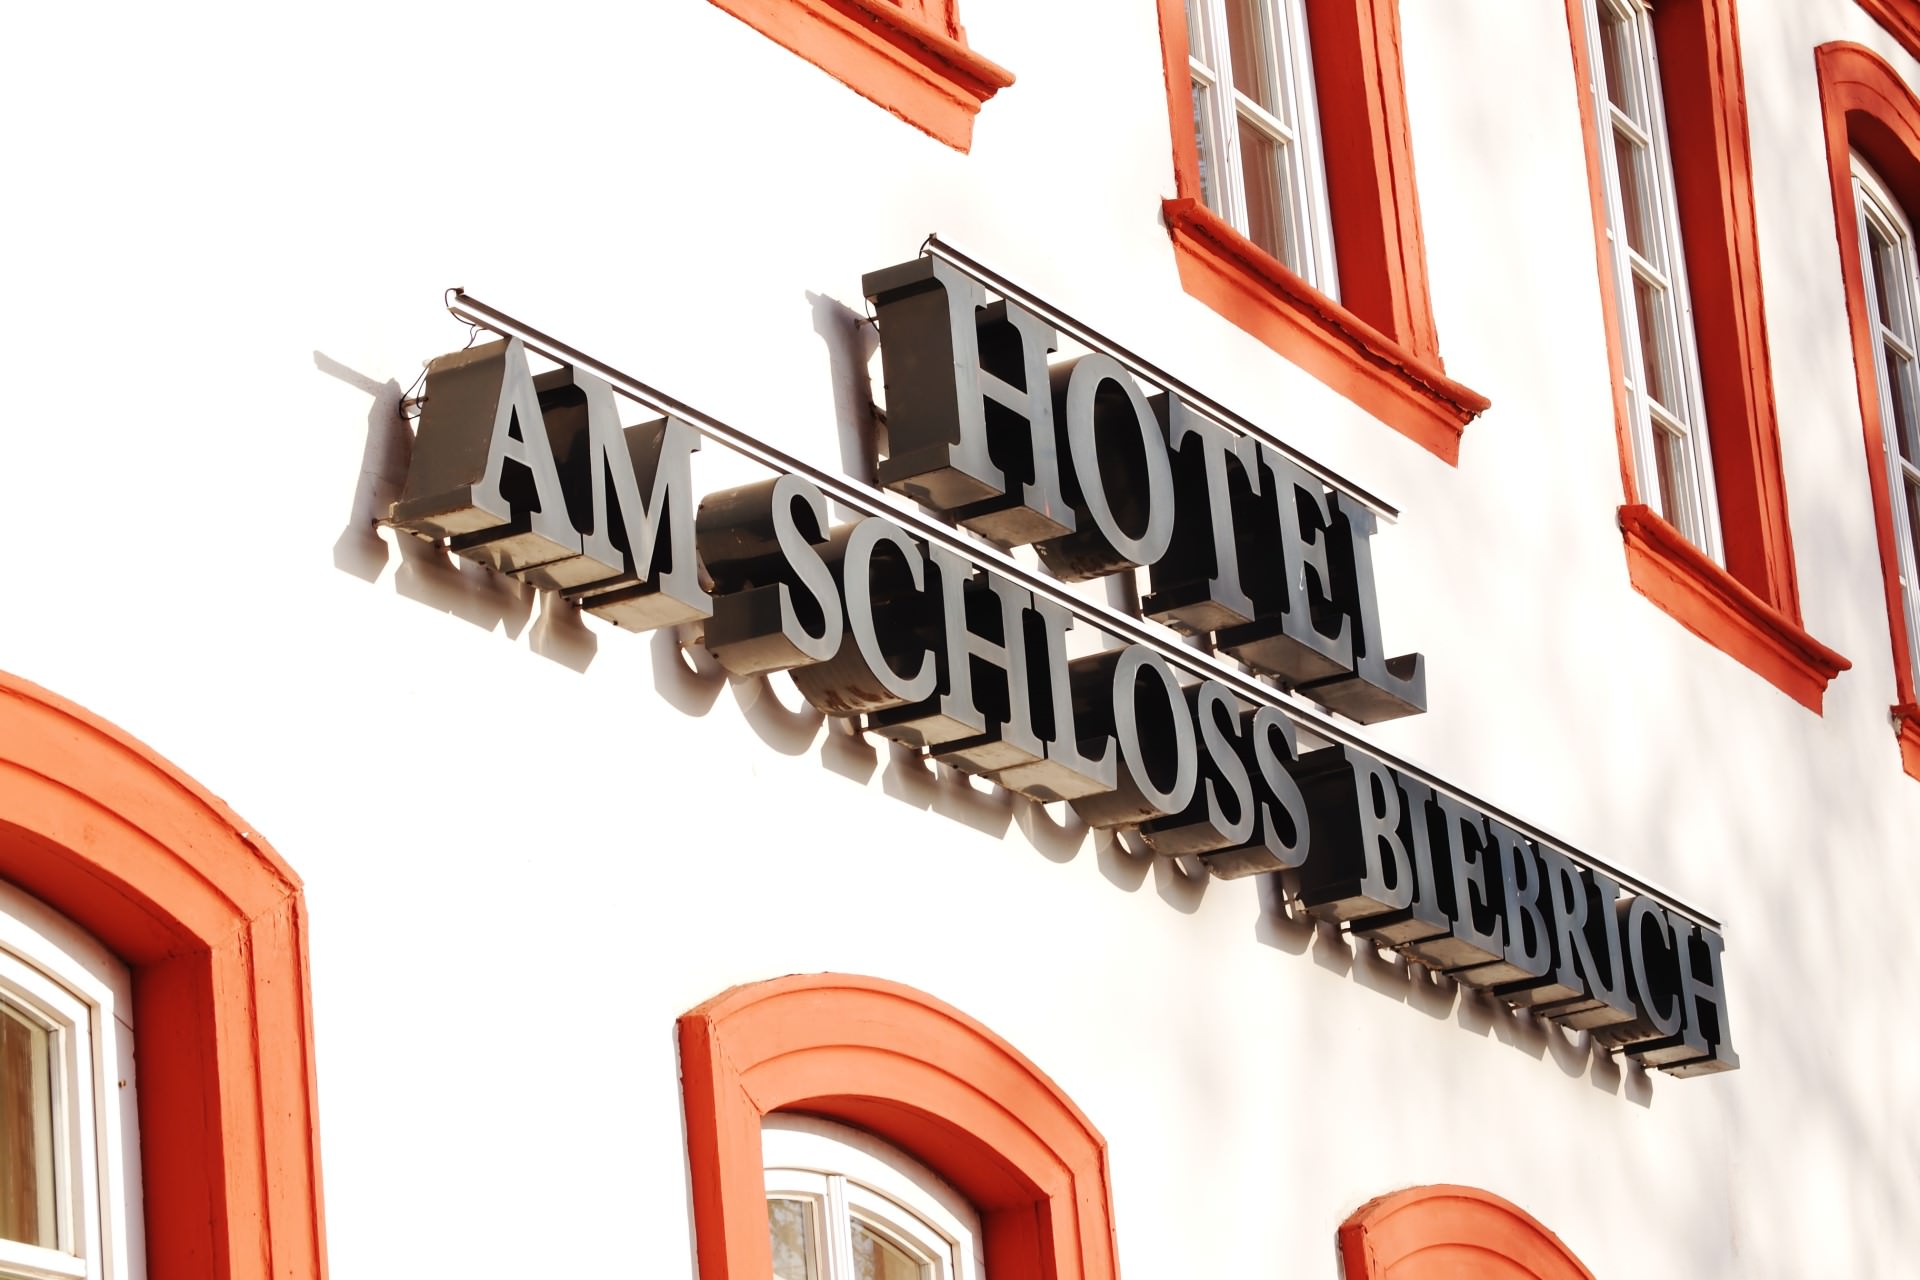 Hotel am Schloss Biebrich